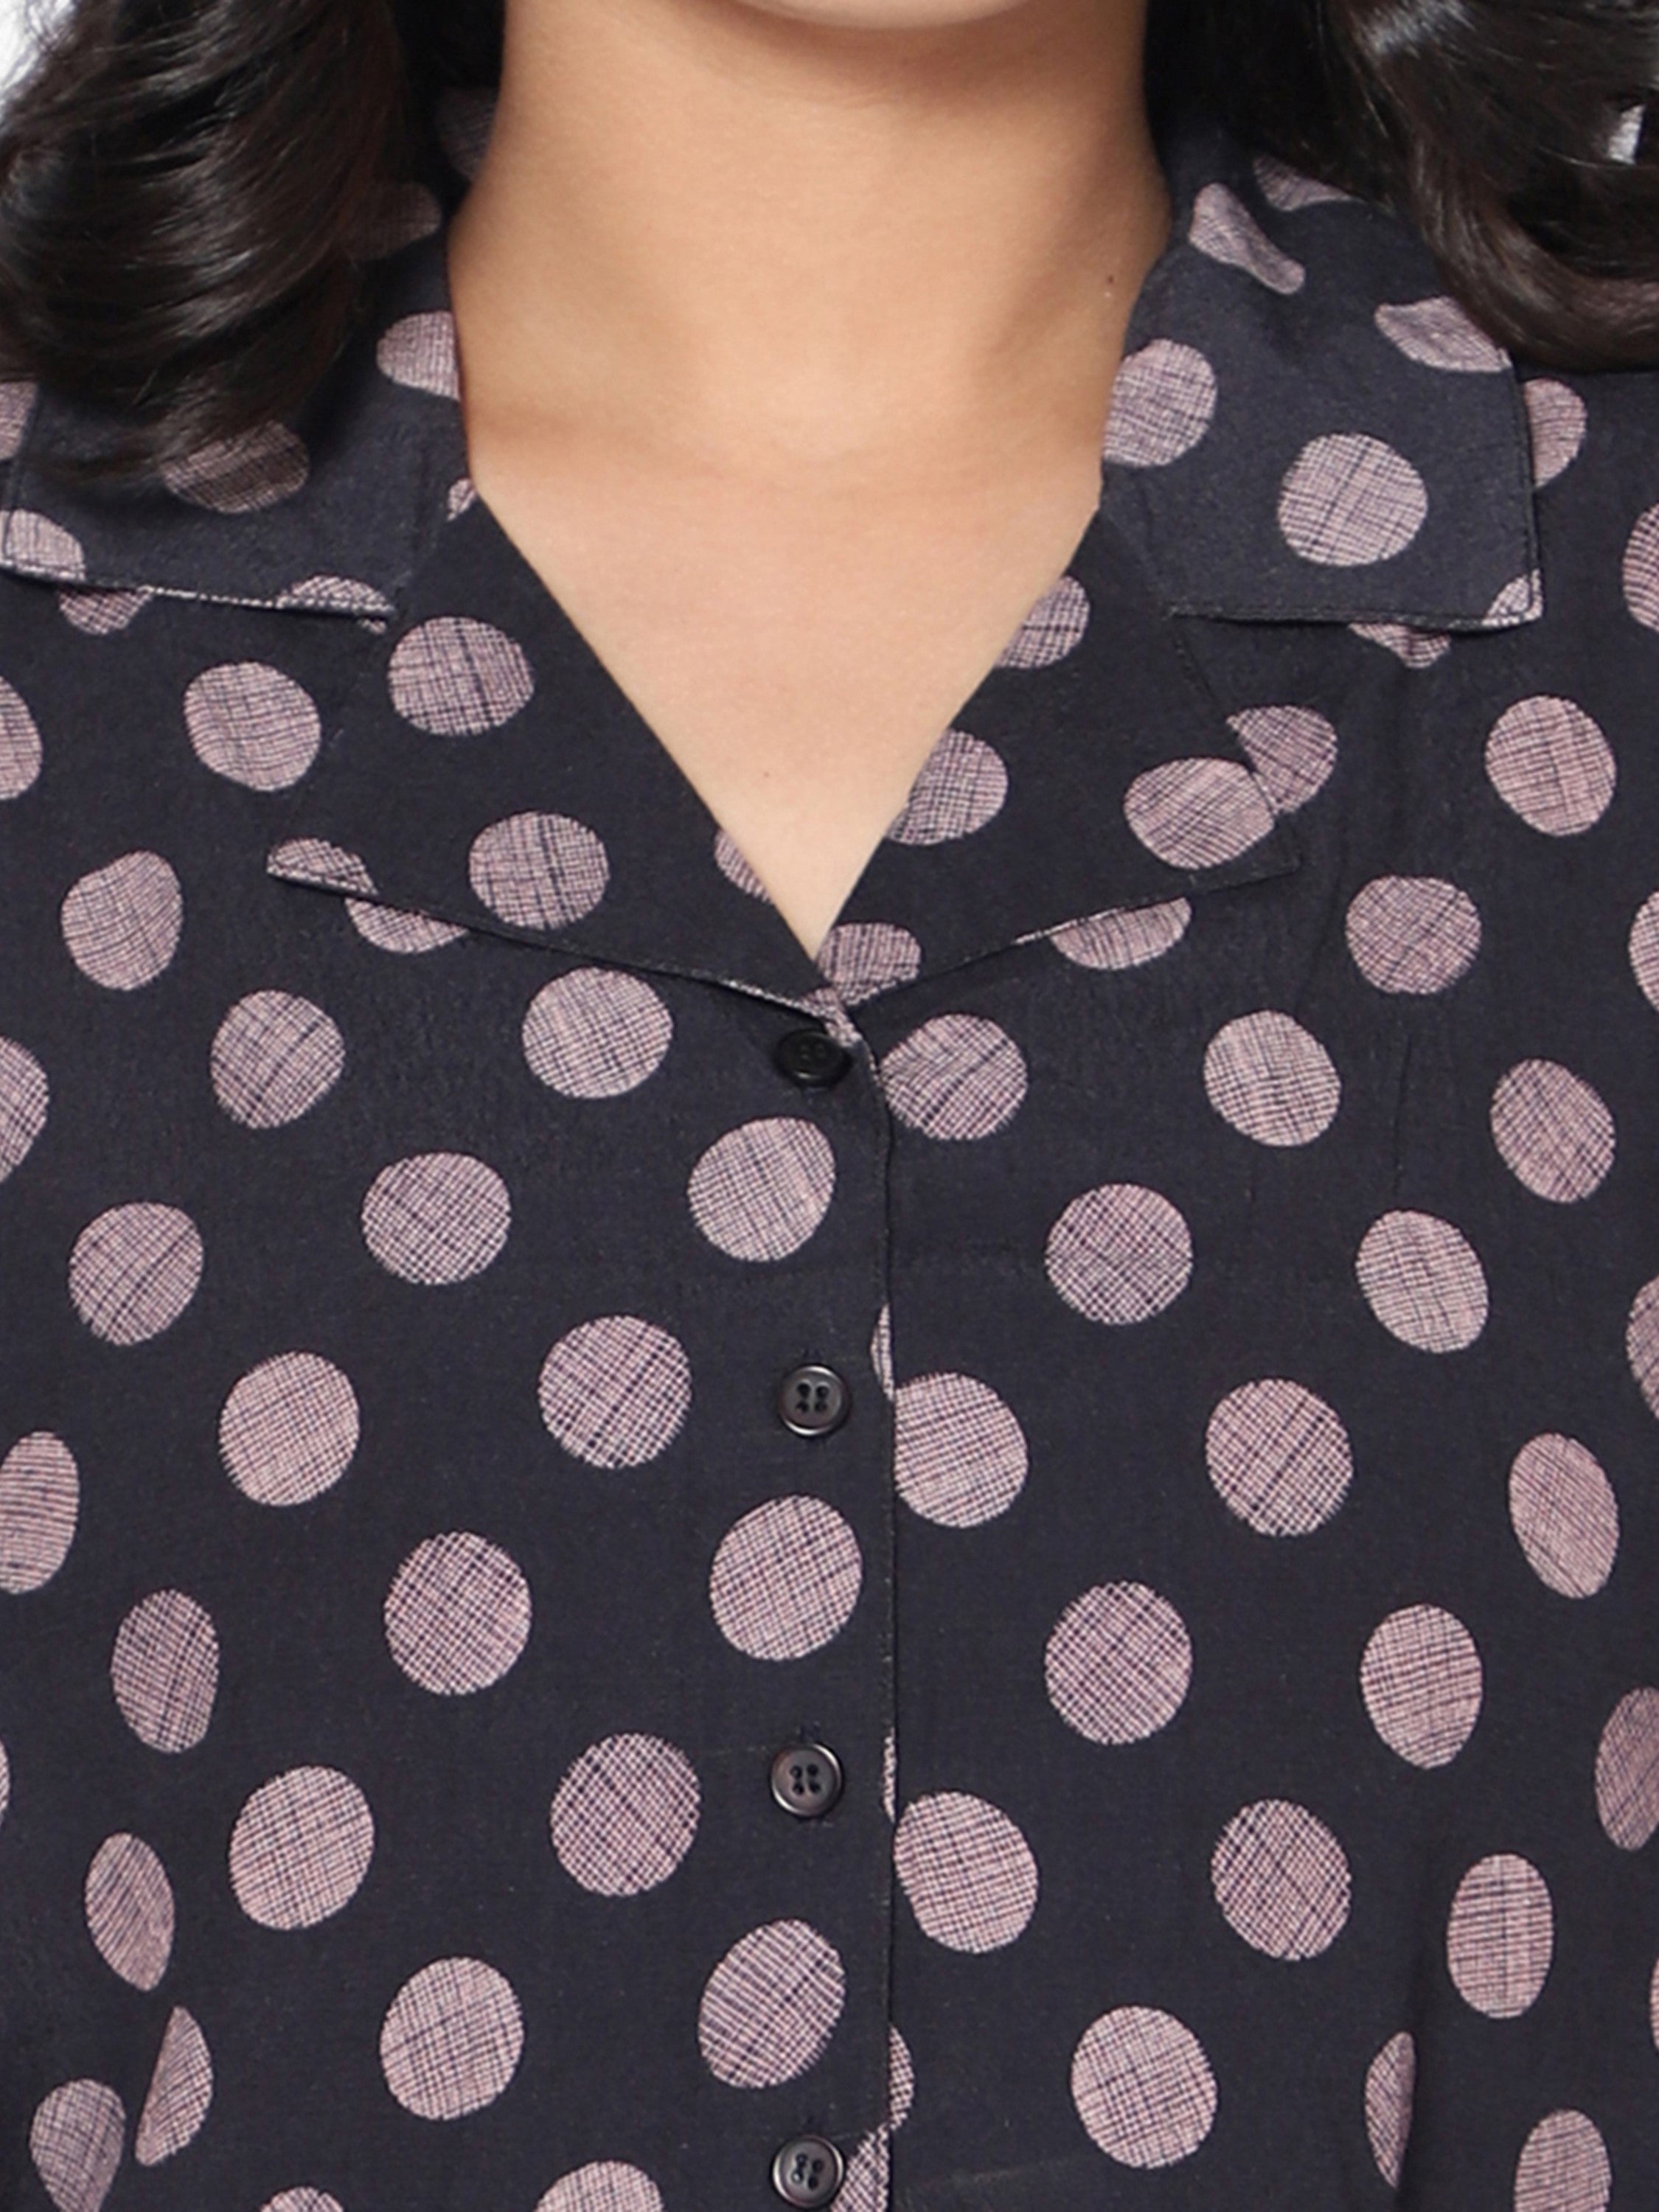 Girls Polka Dot Crop Top- Black Cropped Shirt